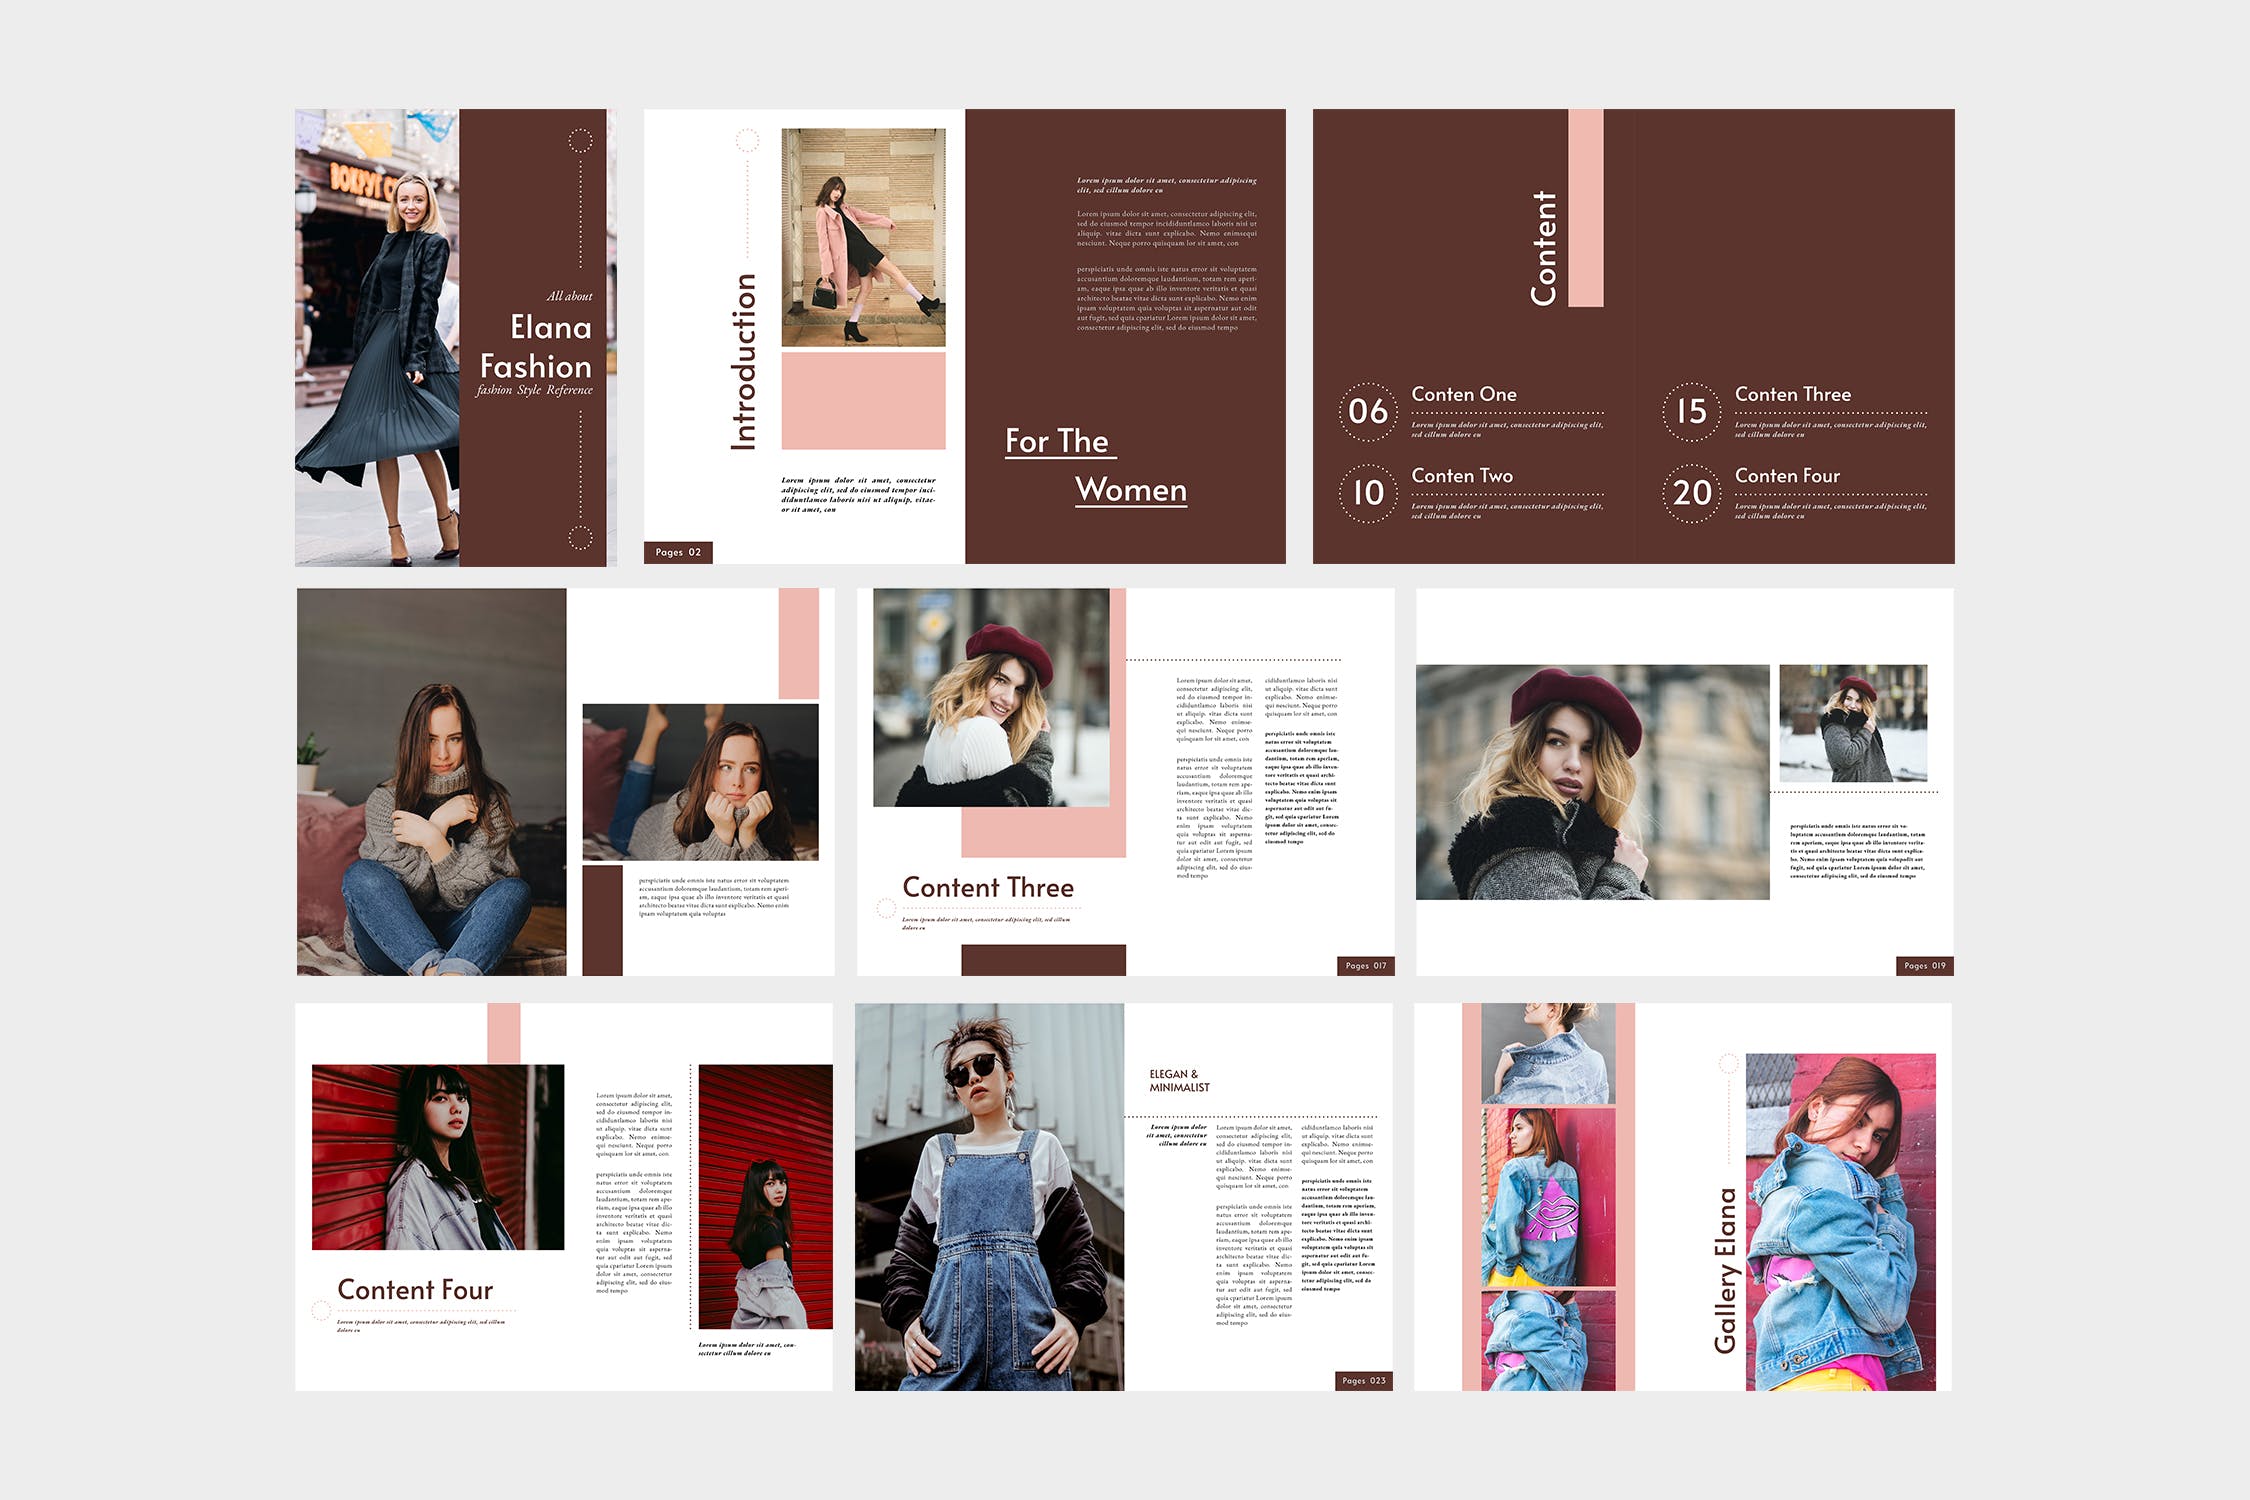 时装产品16图库精选目录设计模板 Elana Fashion Lookbook Catalogue插图(4)